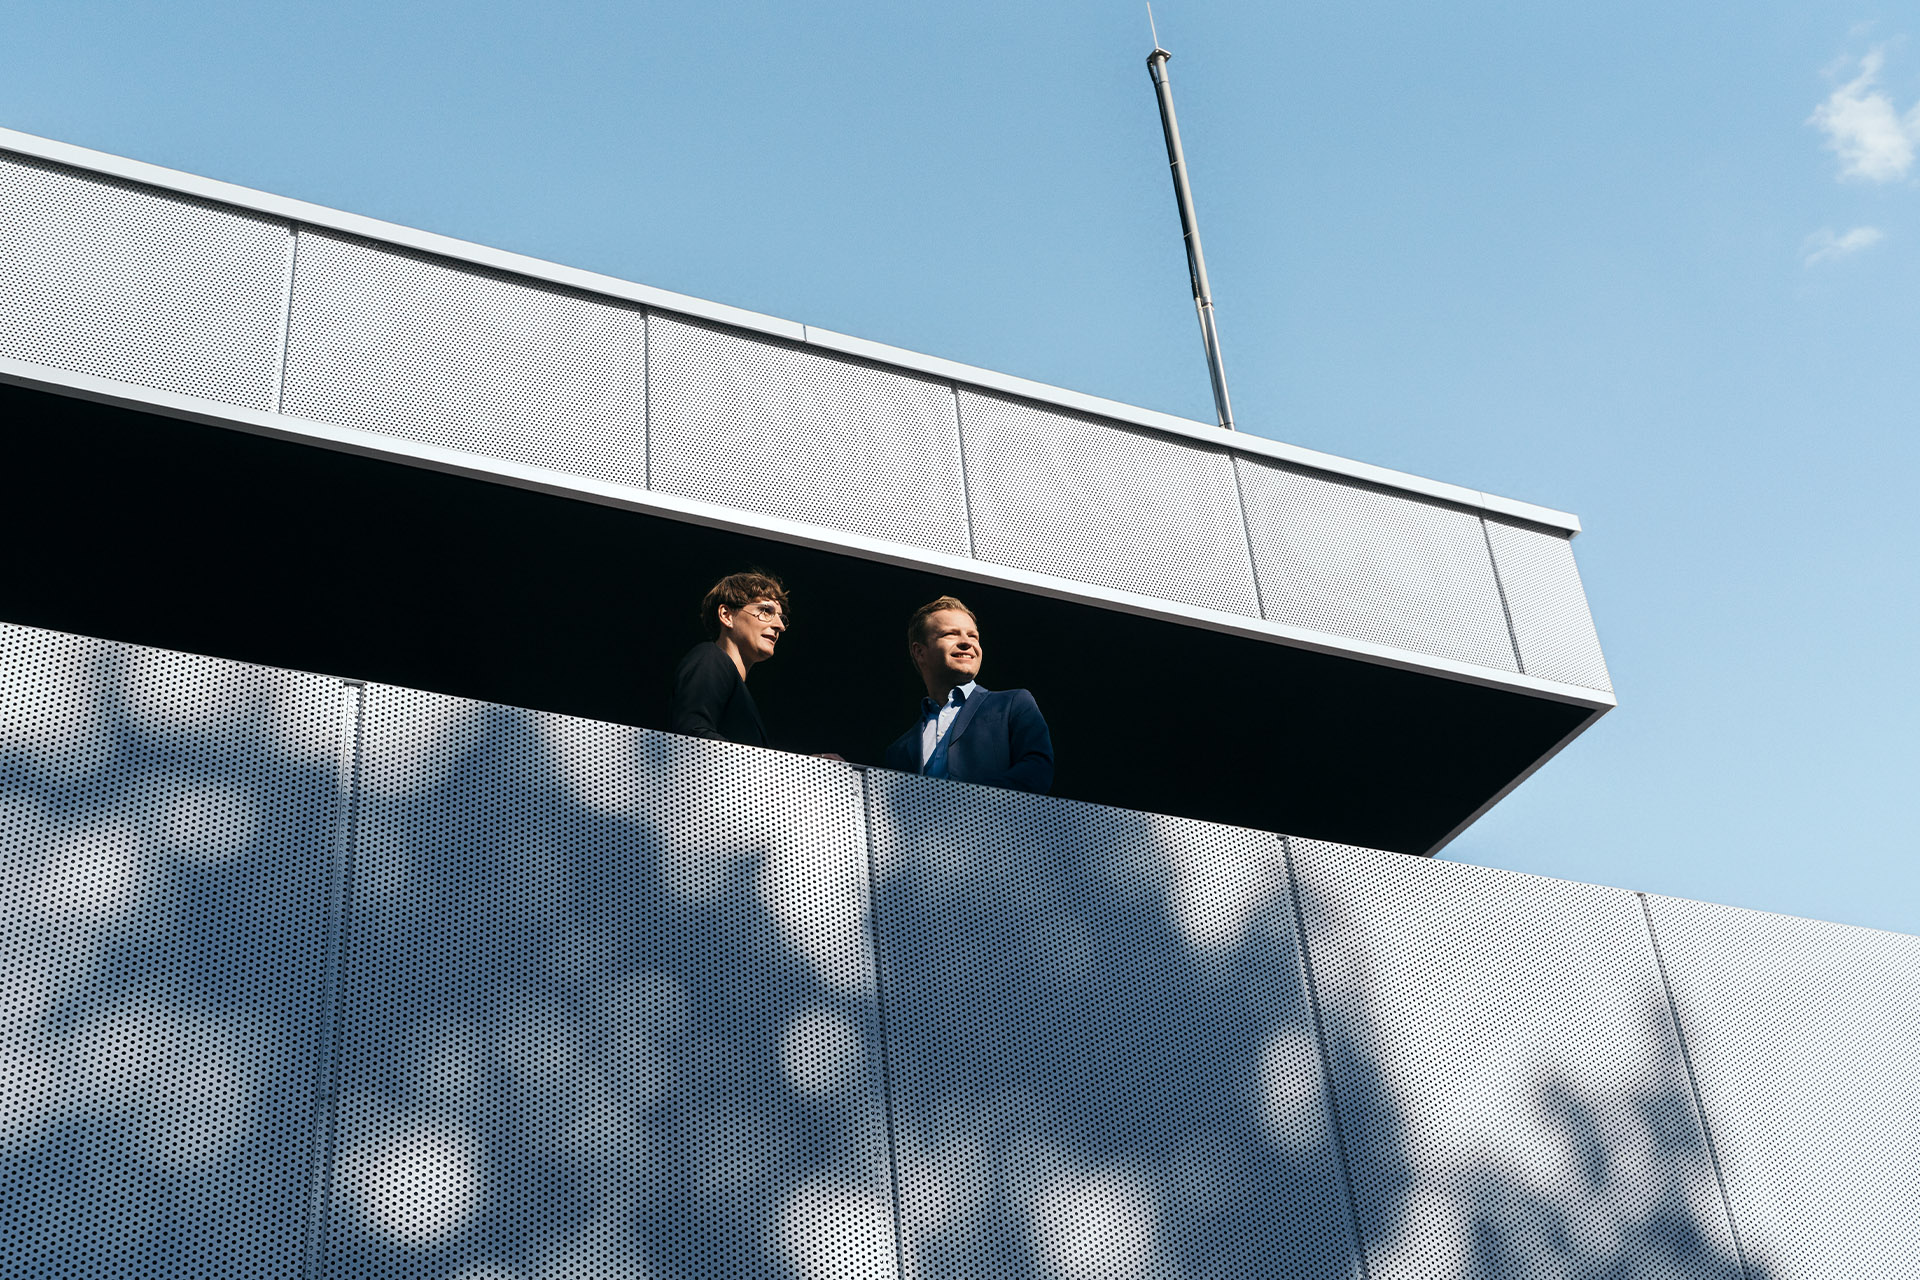 Les experts en développement durable Dr Johanna Klewitz et Malte Vömel regardent depuis le balcon de l'Audi charging hub Lounge.